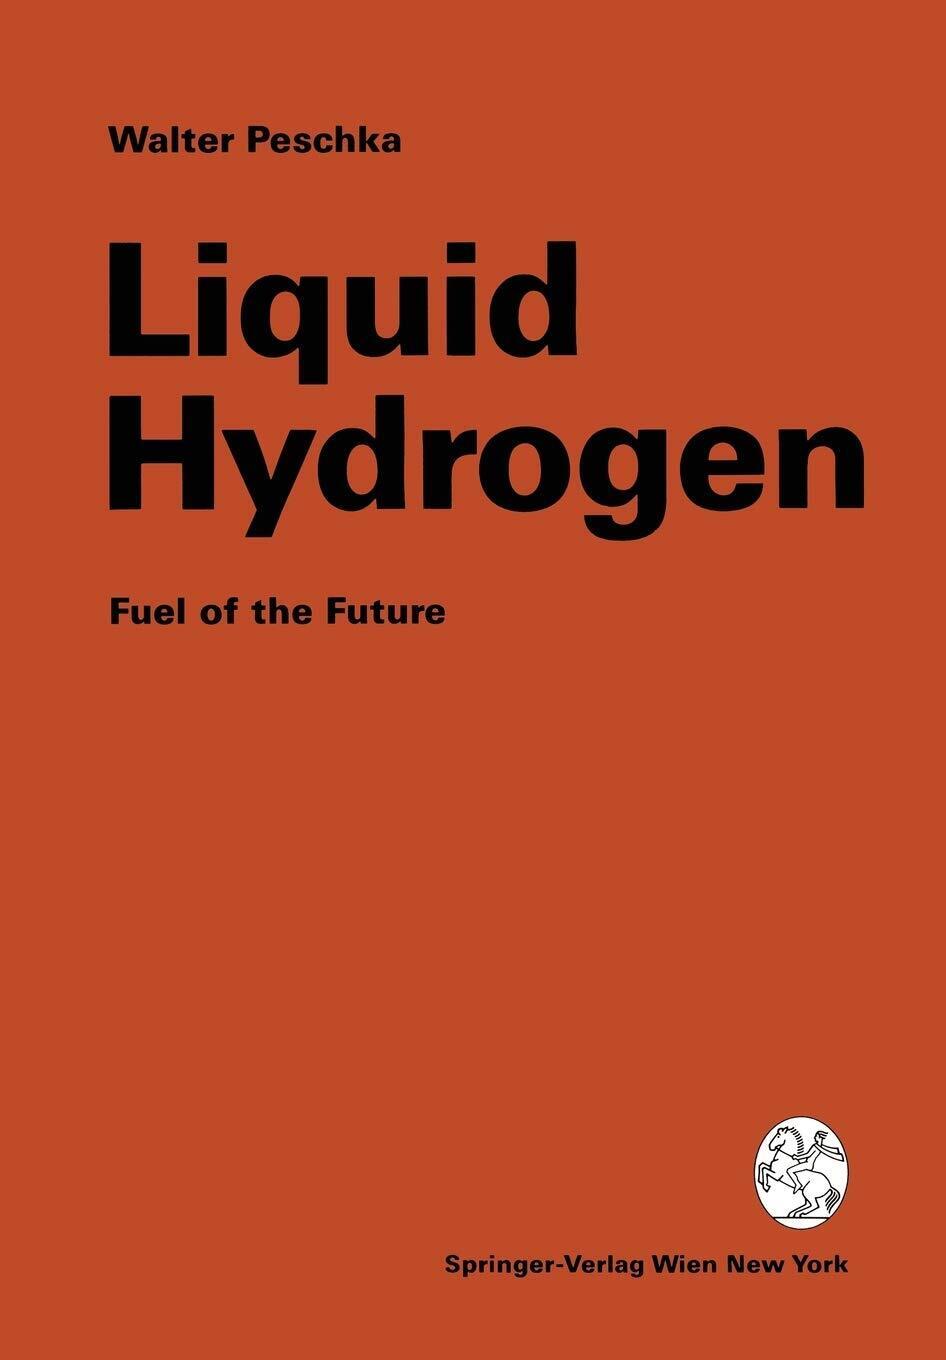 Liquid Hydrogen - Walter Peschka - Springer, 2012